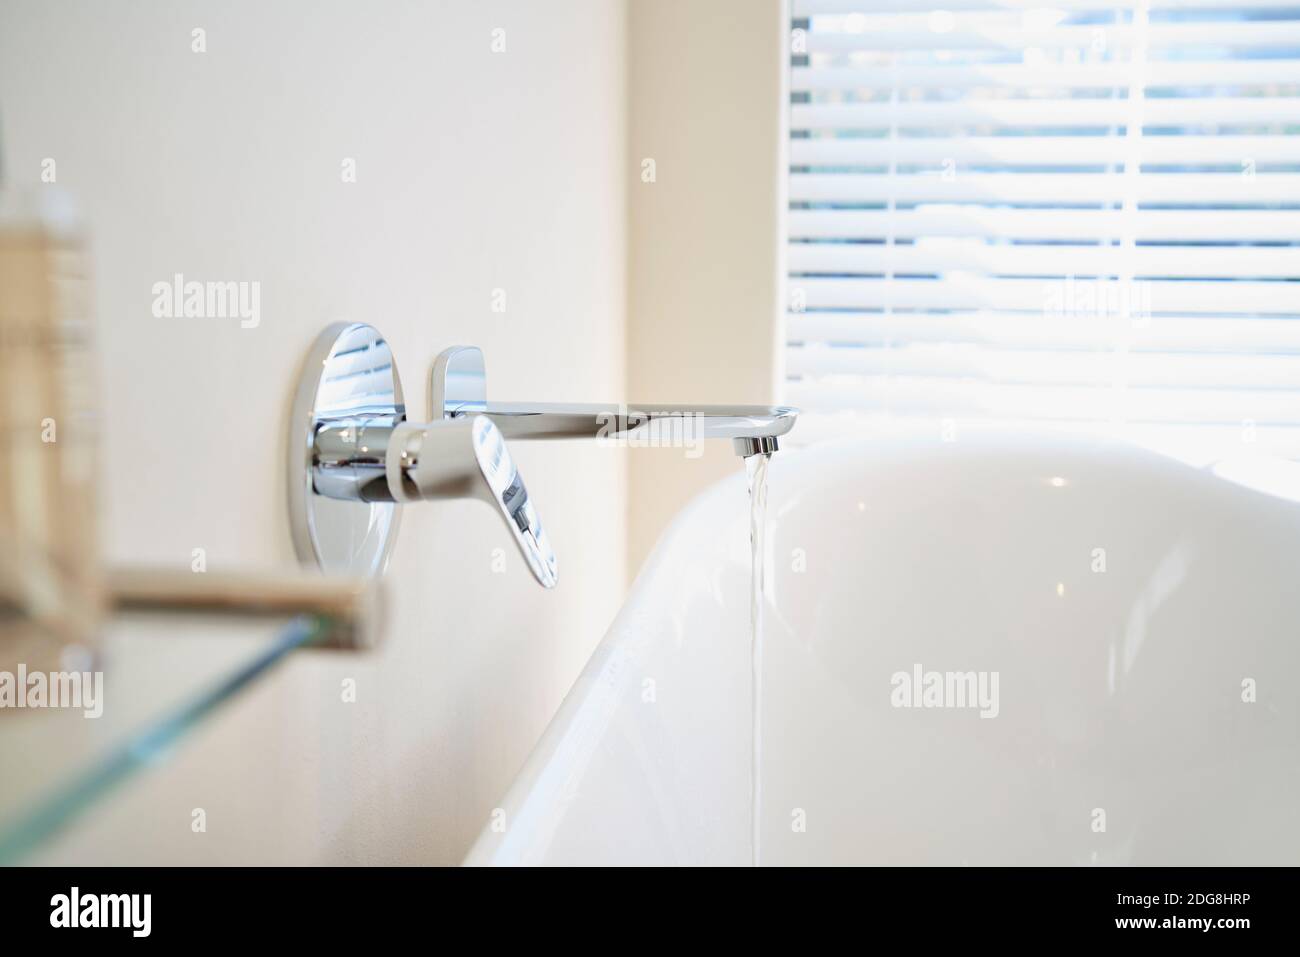 Chiudere l'acqua dal rubinetto riempiendo la vasca bianca di immersione in bagno Foto Stock